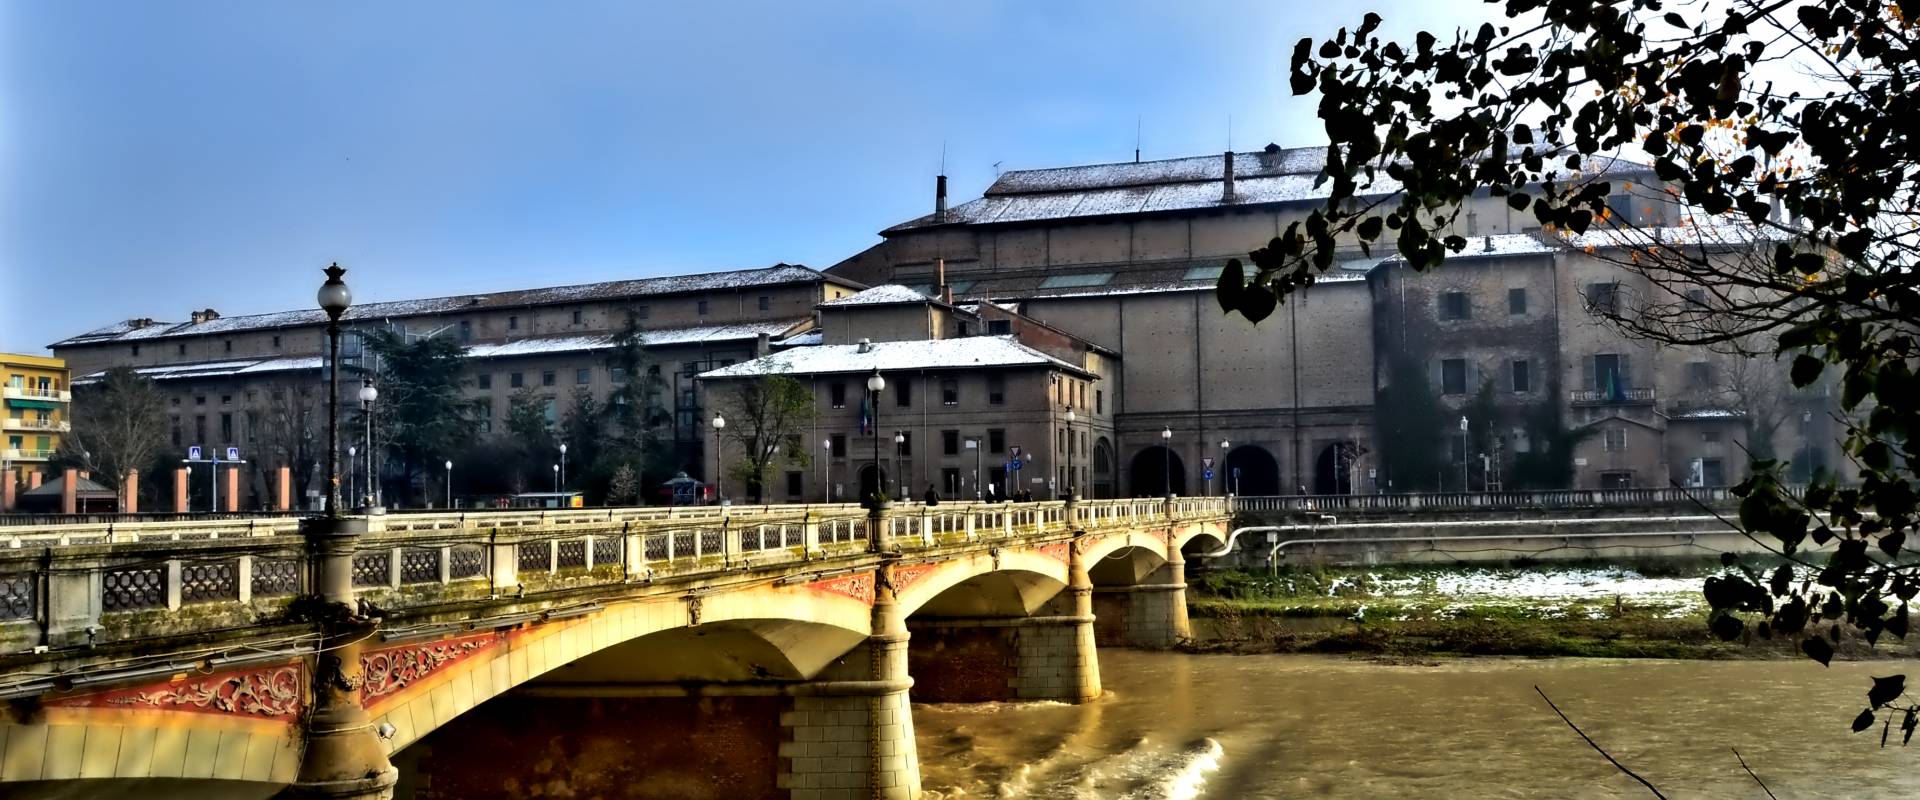 Il Palazzo della Pilotta visto dal ponte Verdi photo by Paperkat